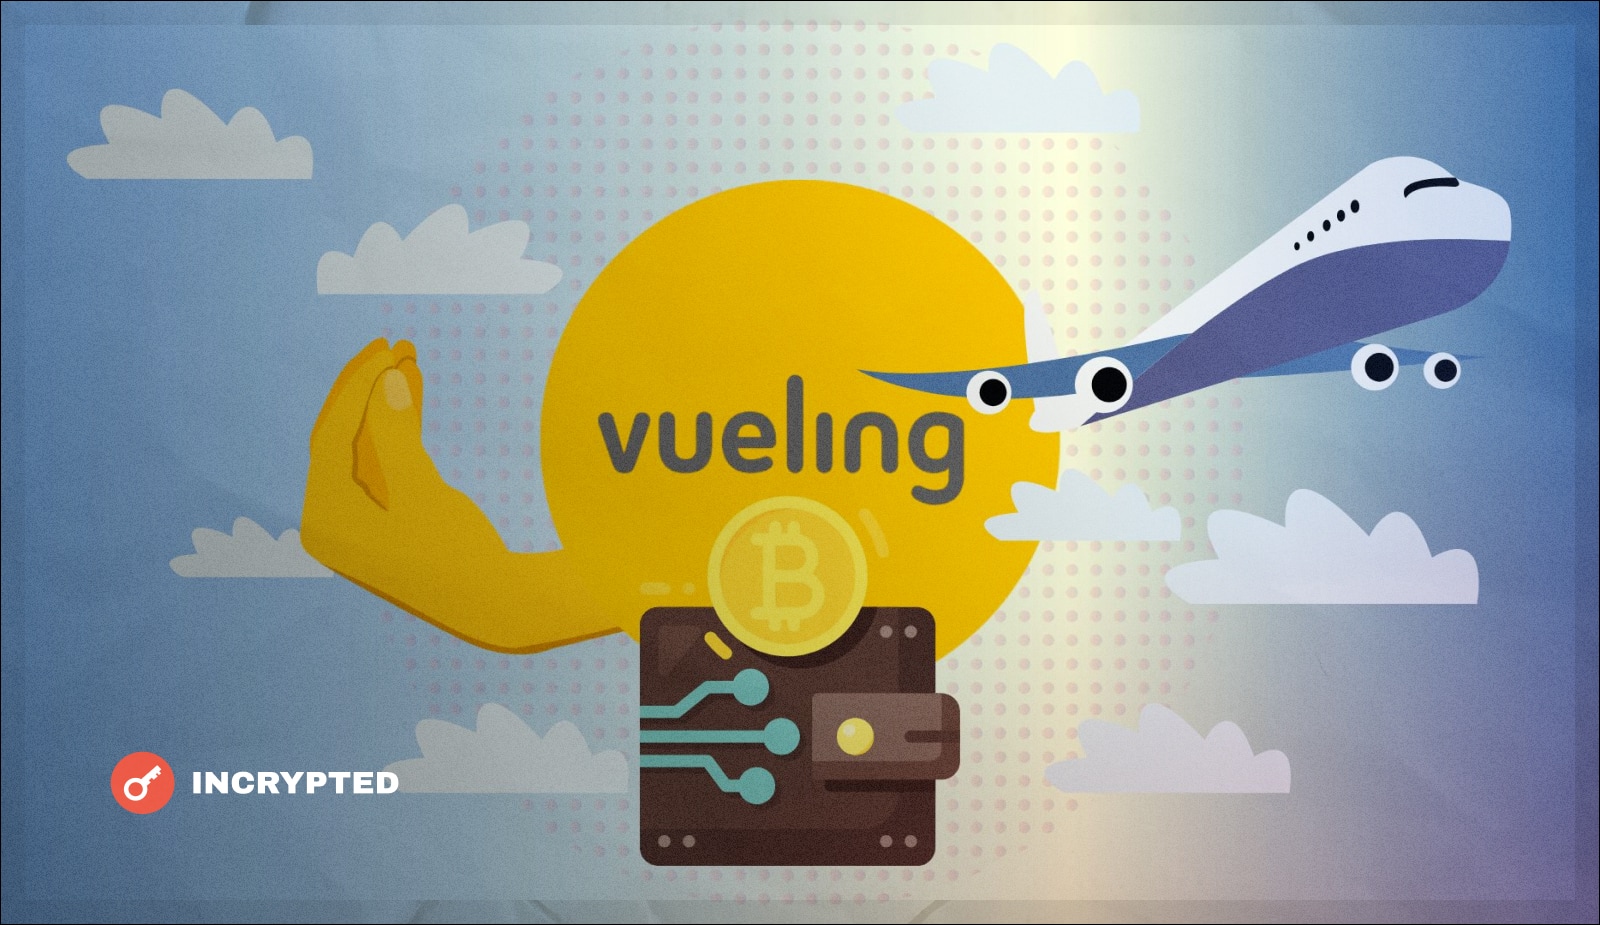 Испанская авиакомпания Vueling начнет принимать криптовалюты. Заглавный коллаж новости.